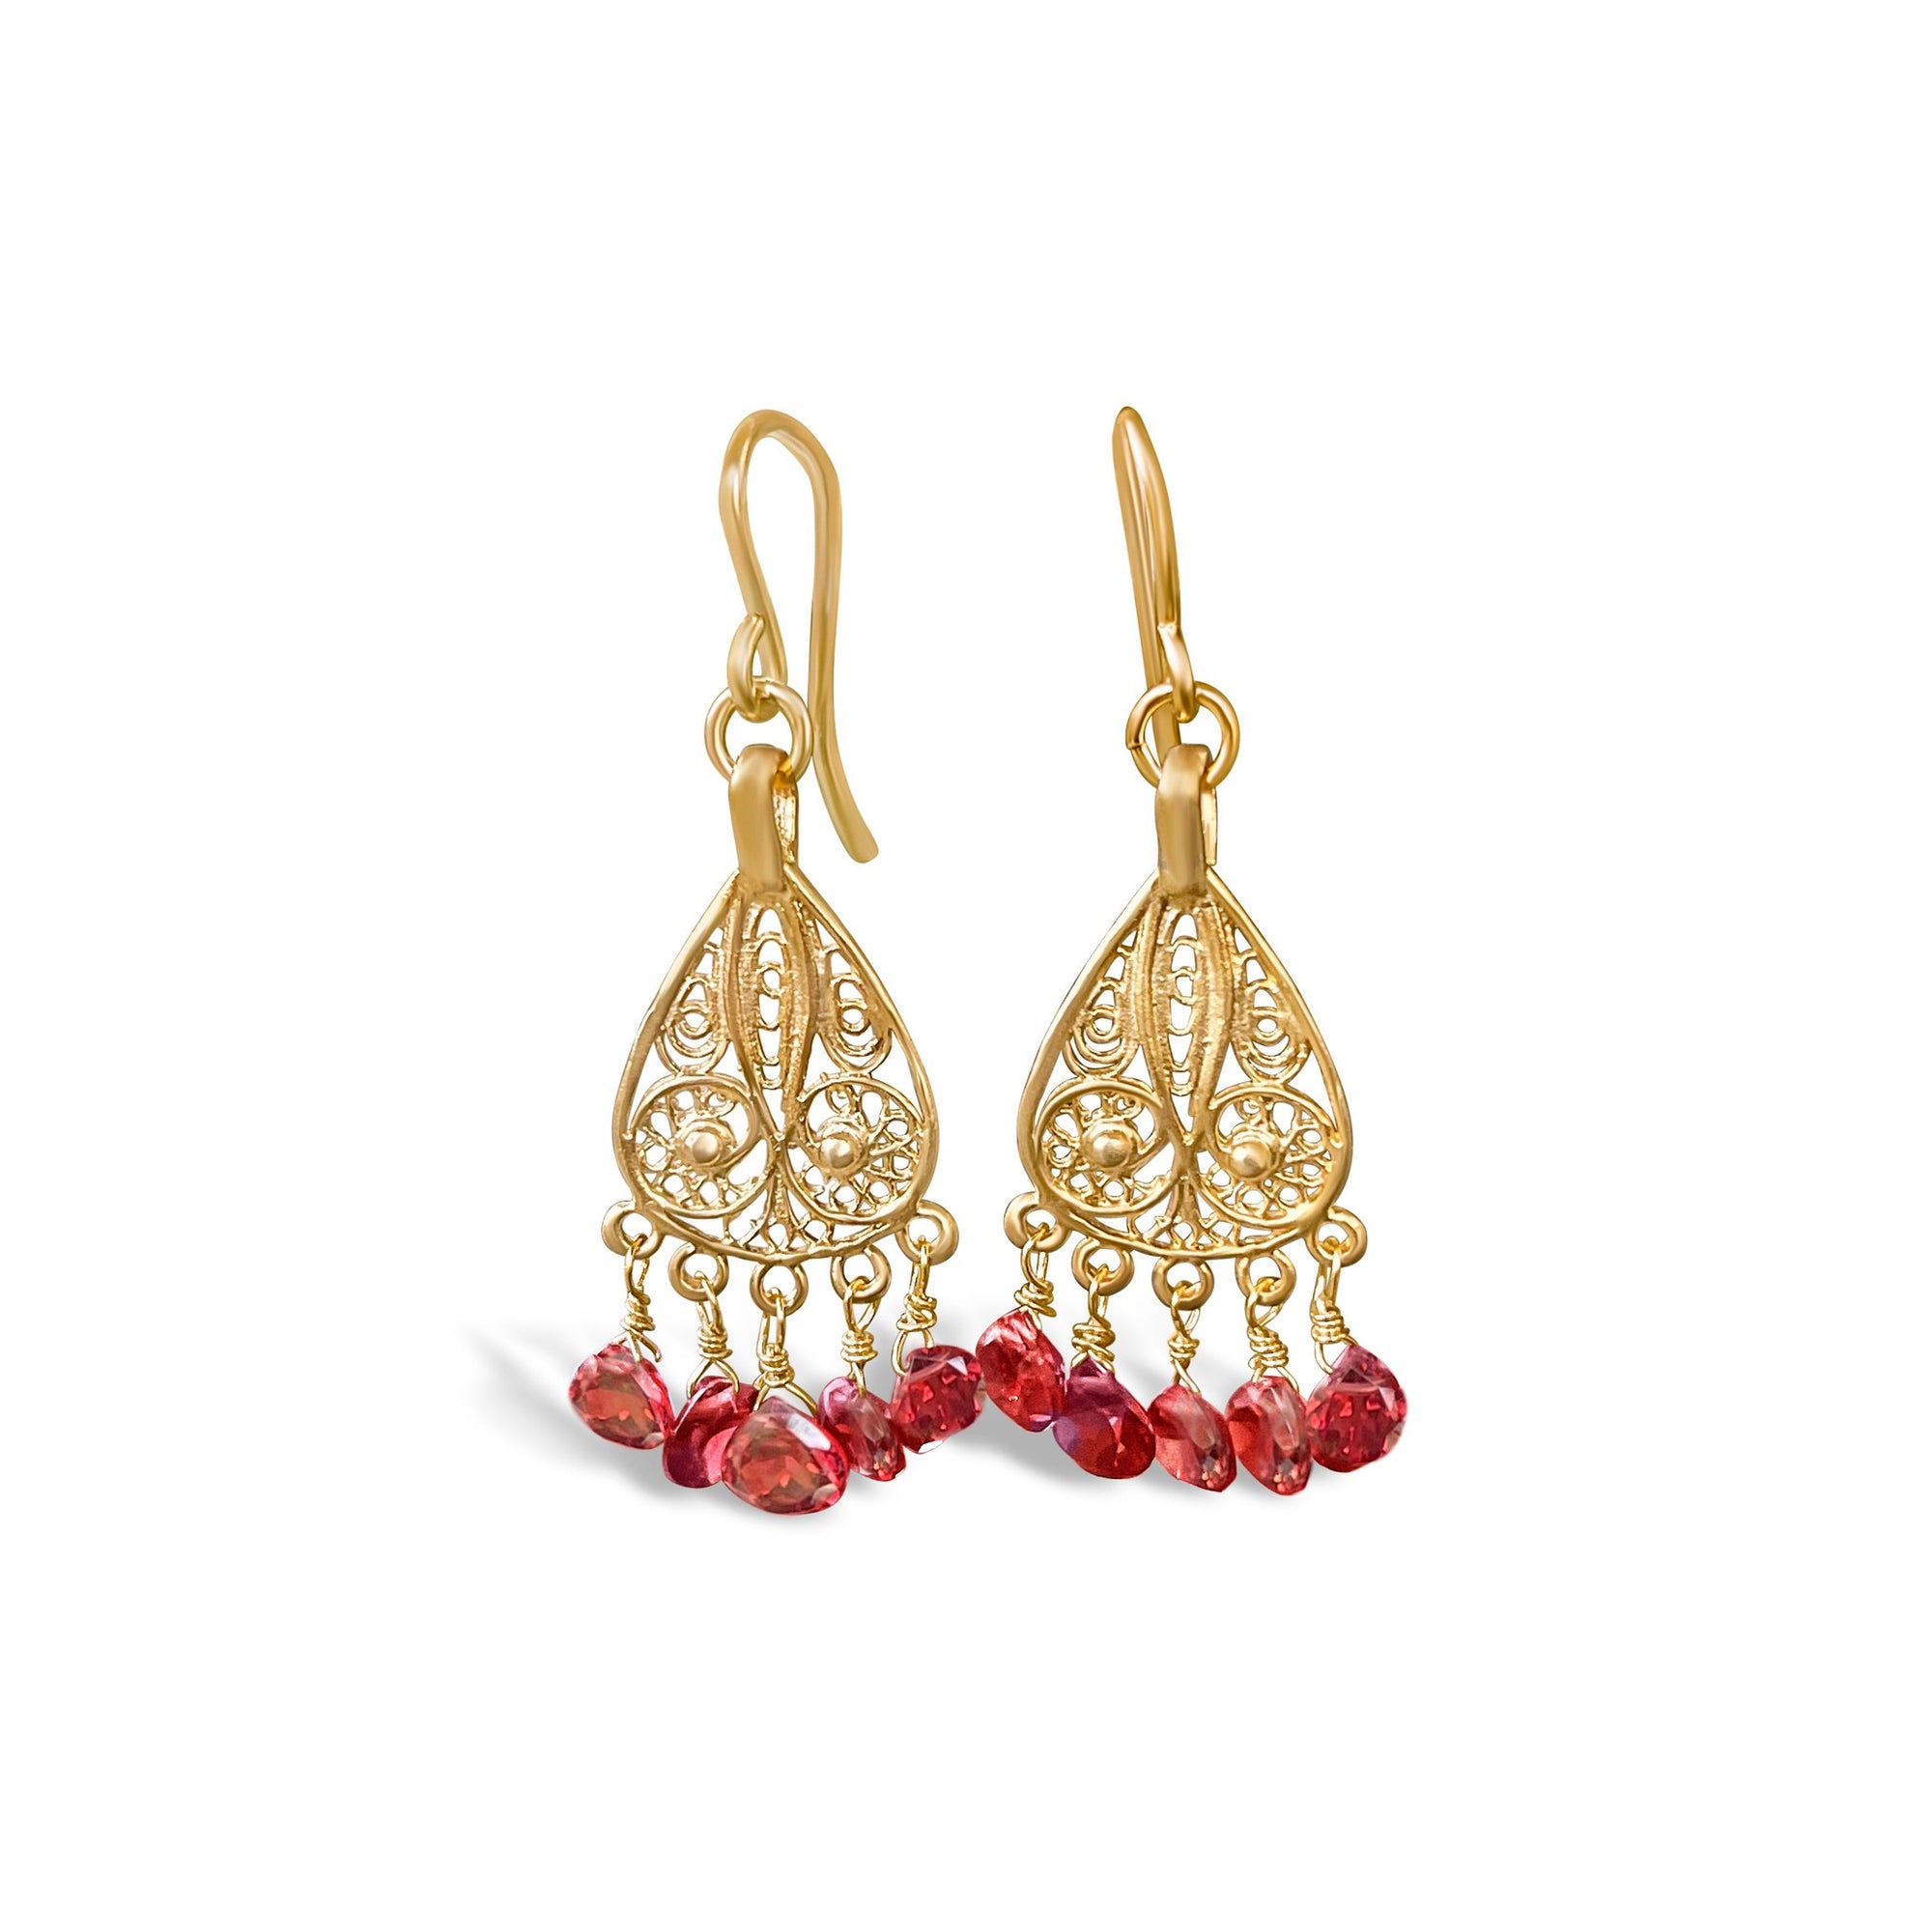 Garnet Filigree Chandelier Earrings | 22k Gold Plated Indian Jewelry